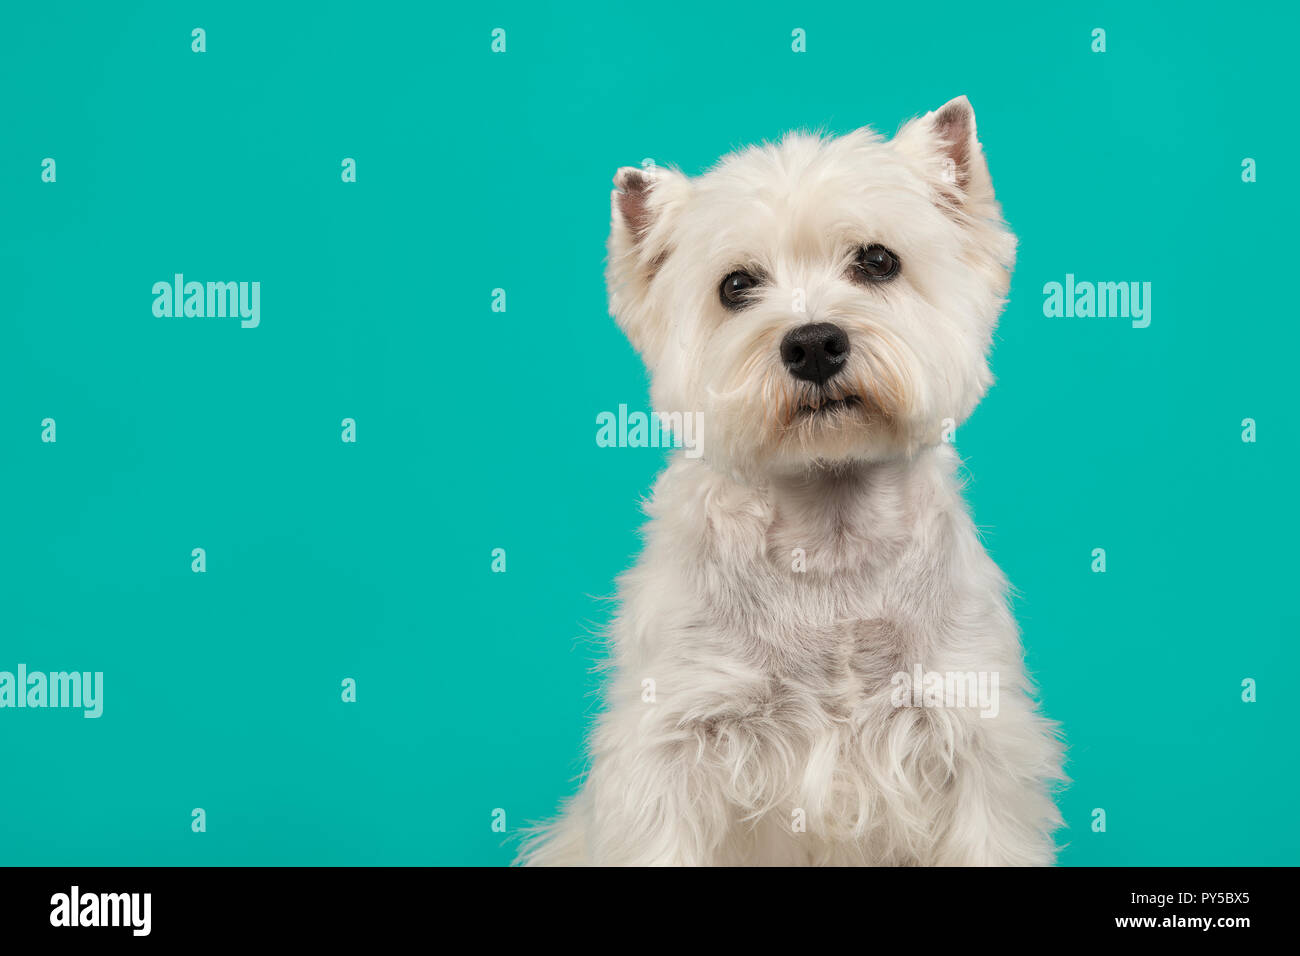 Ritratto di un West Highland White Terrier o westie cane percorrendo via su un turchese sfondo blu Foto Stock